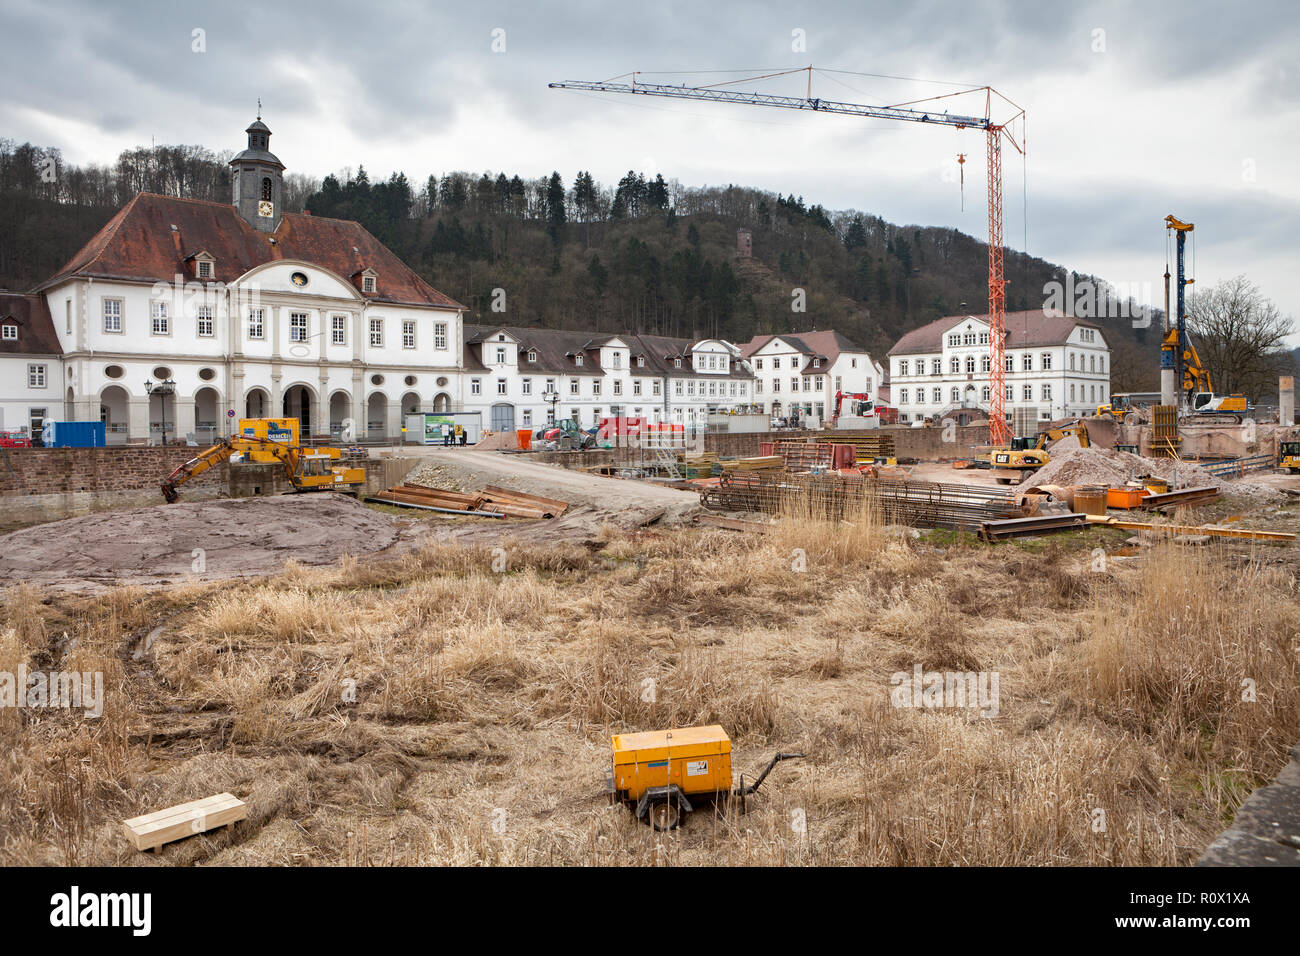 Bad Karlshafen, site de construction en 2018, la vallée de la Weser, Weser Uplands, Thuringe, Hesse, Germany, Europe Banque D'Images